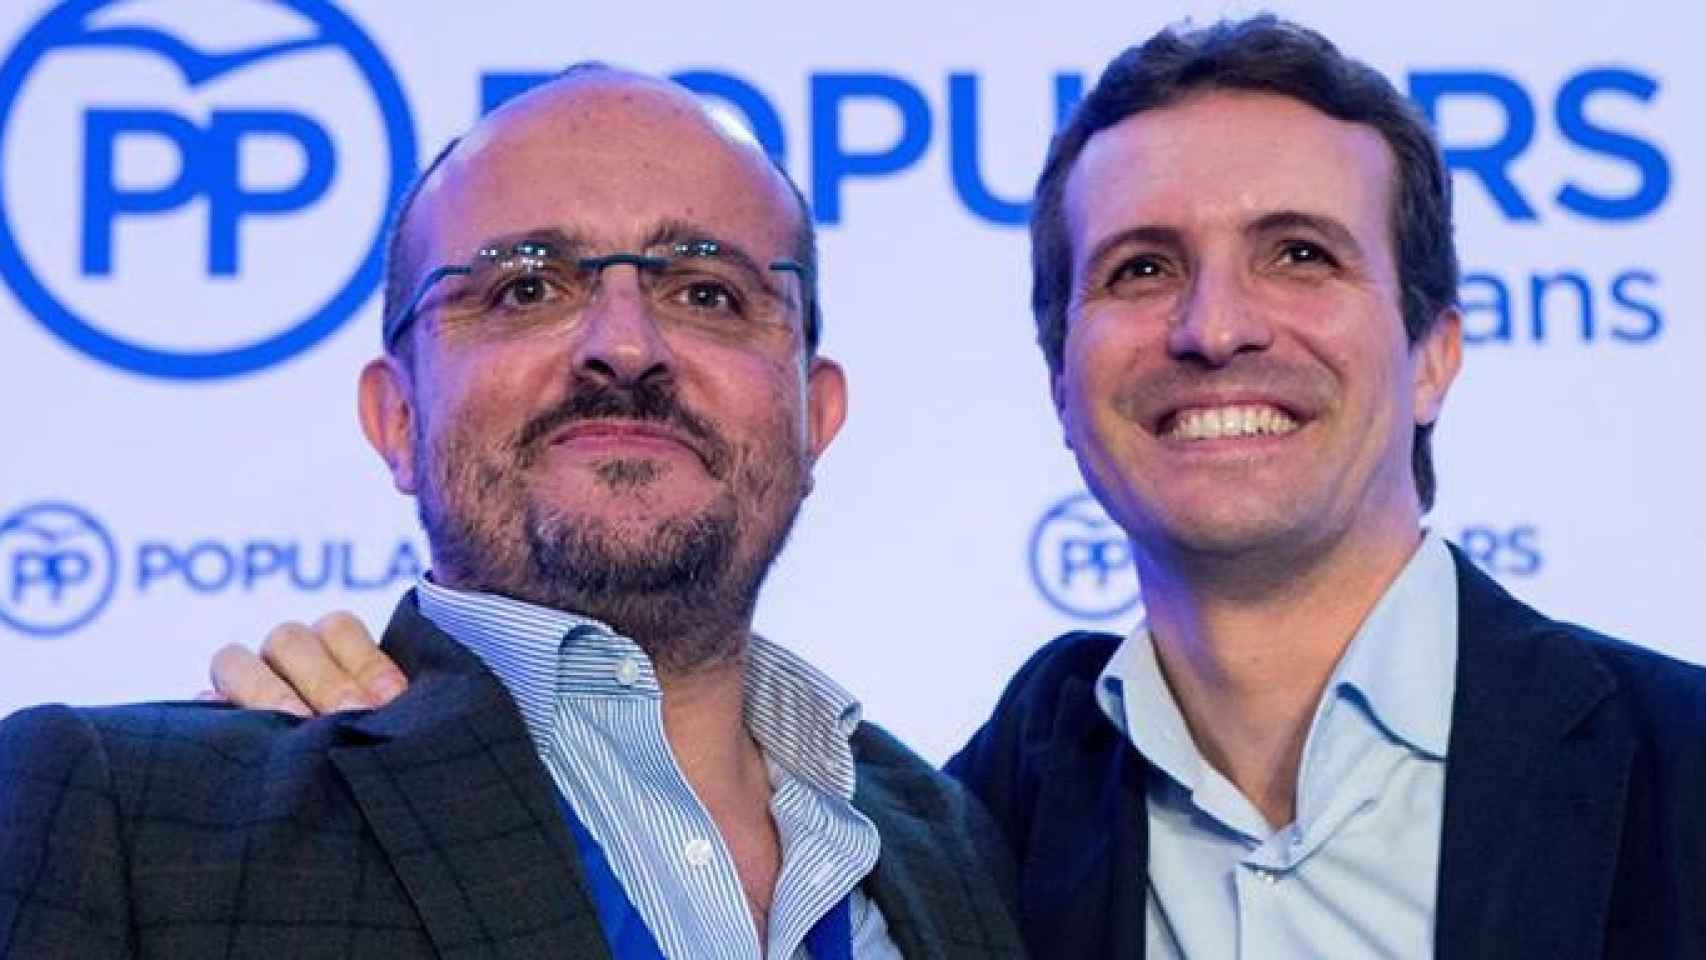 El presidente del PPC, Alejandro Fernández (i) y el líder nacional del partido, Pablo Casado (d) / EFE